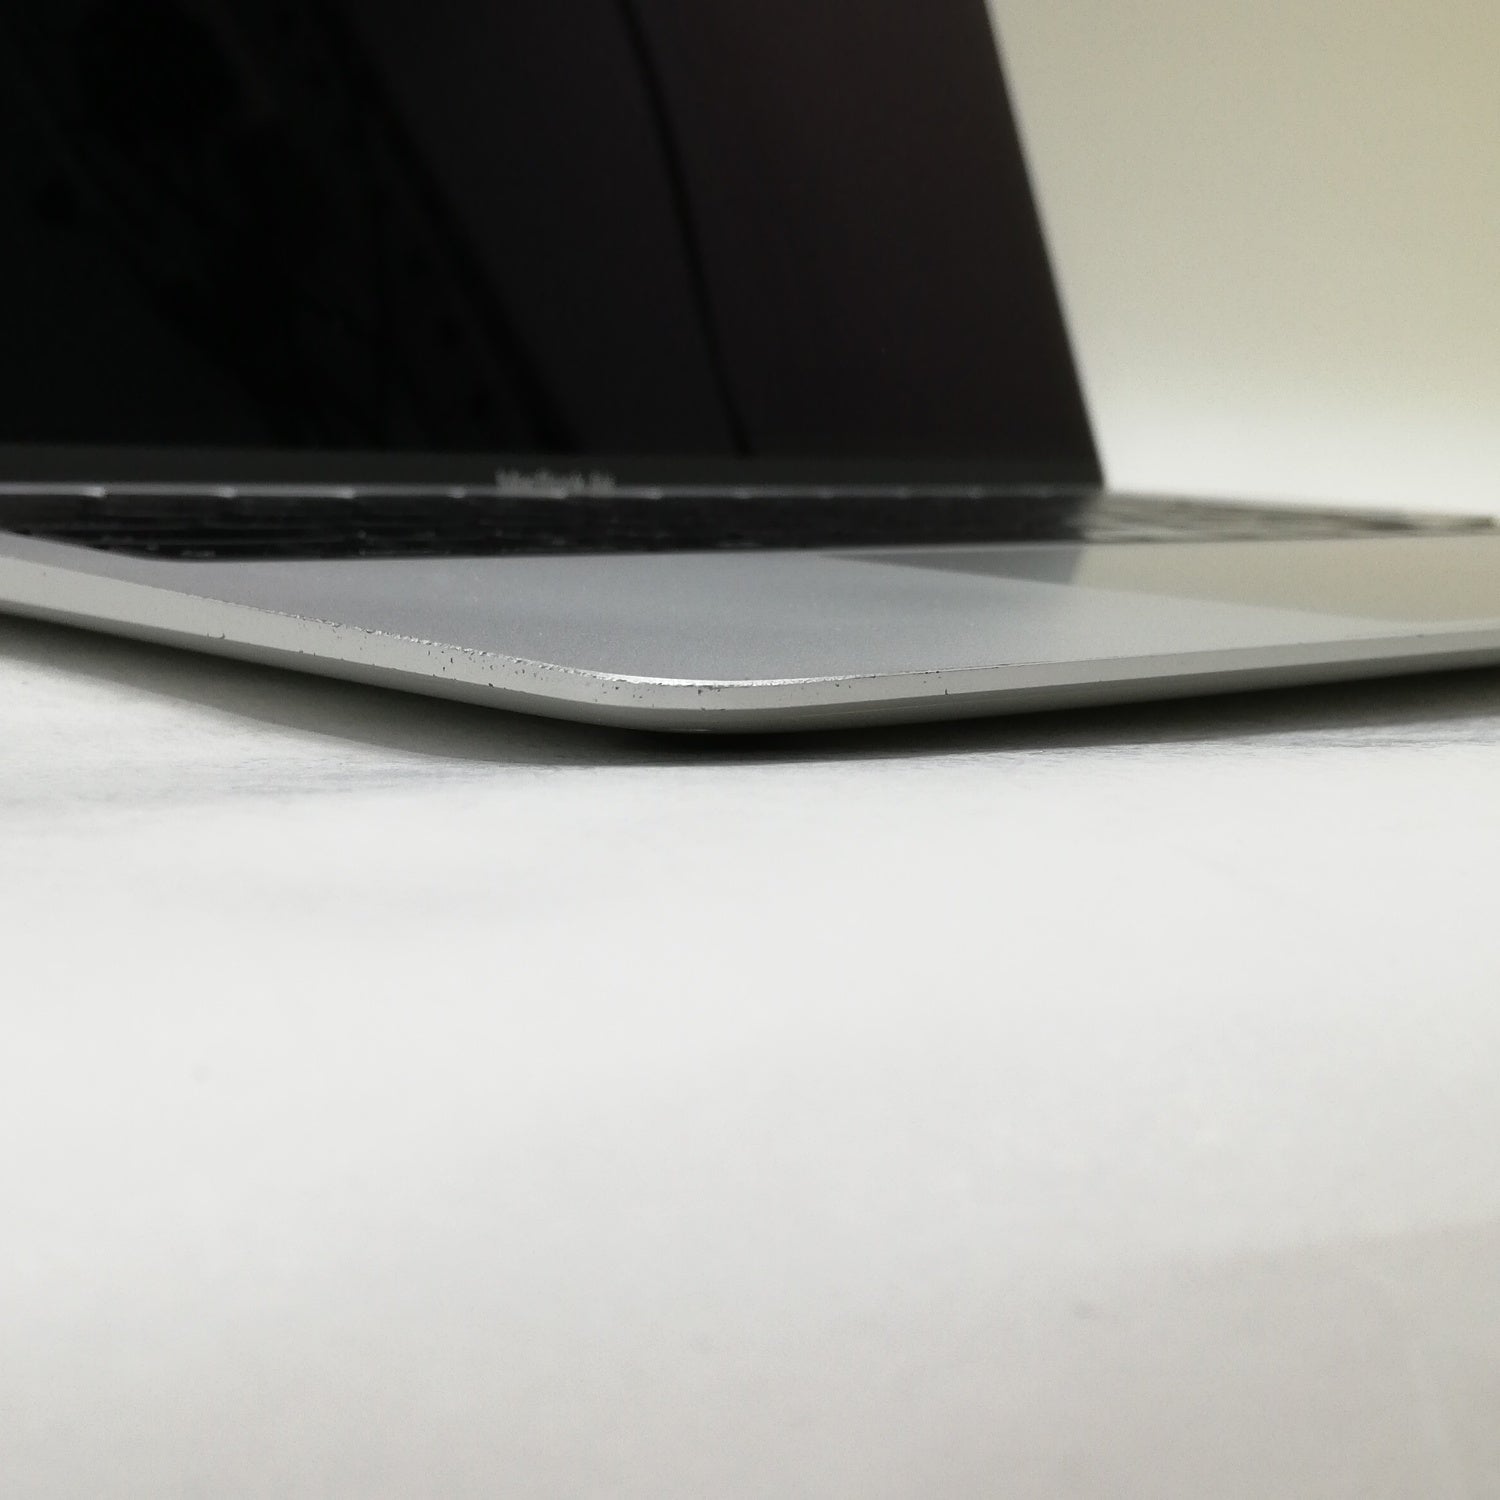 MacBook 中古 販売】MacBook Air Retina Display / 13インチ / 2020 